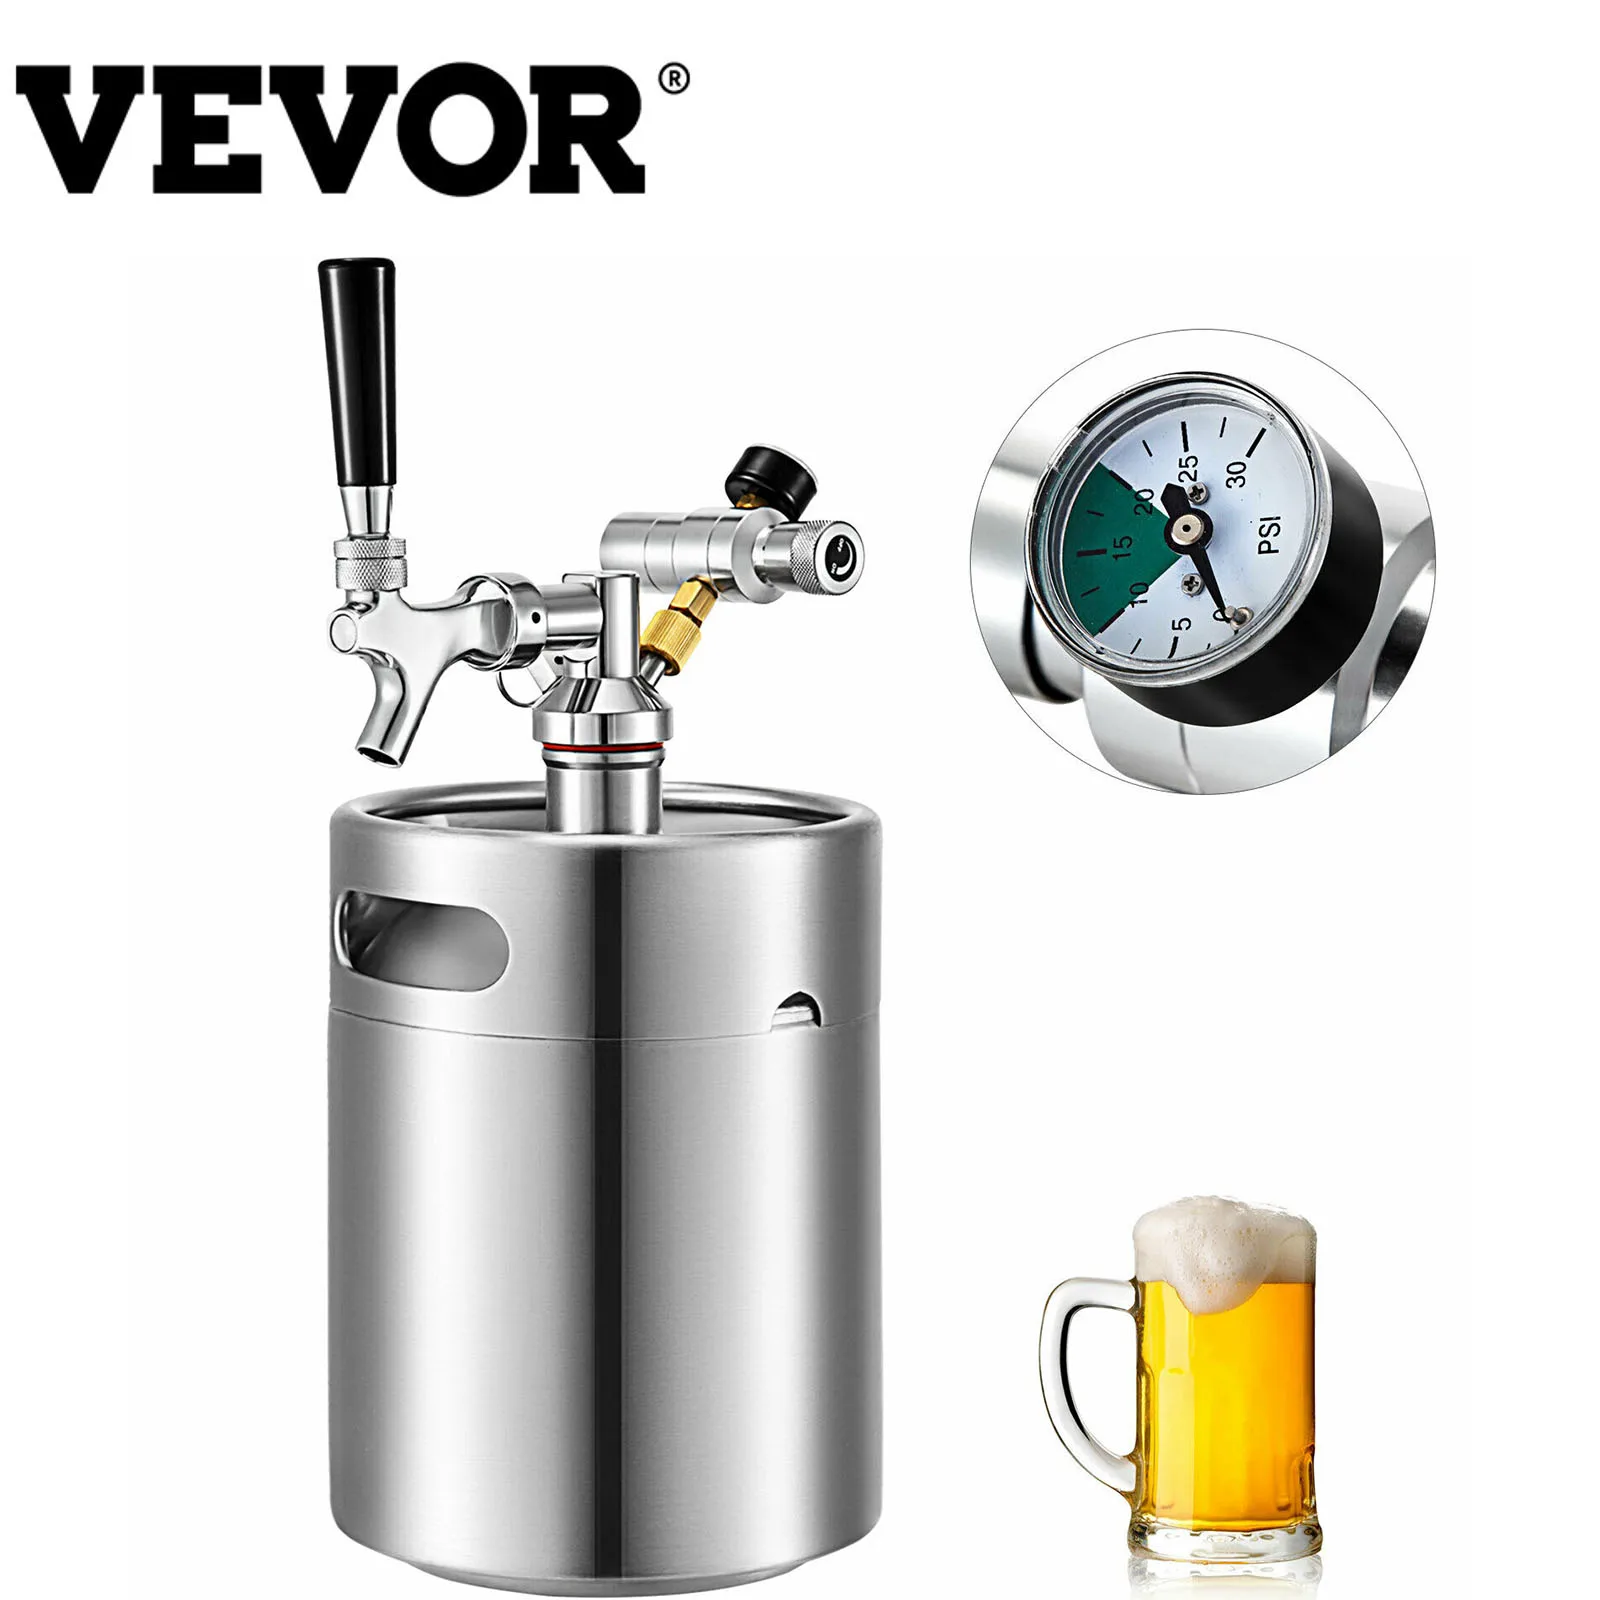 VEVOR 2L 4L 5L برميل البيرة الخشبي صغير الفولاذ المقاوم للصدأ موزع الجعة المحمولة مع البيرة صنبور مكافحة الميكروبية سهلة نظيفة التخزين المنزل است...